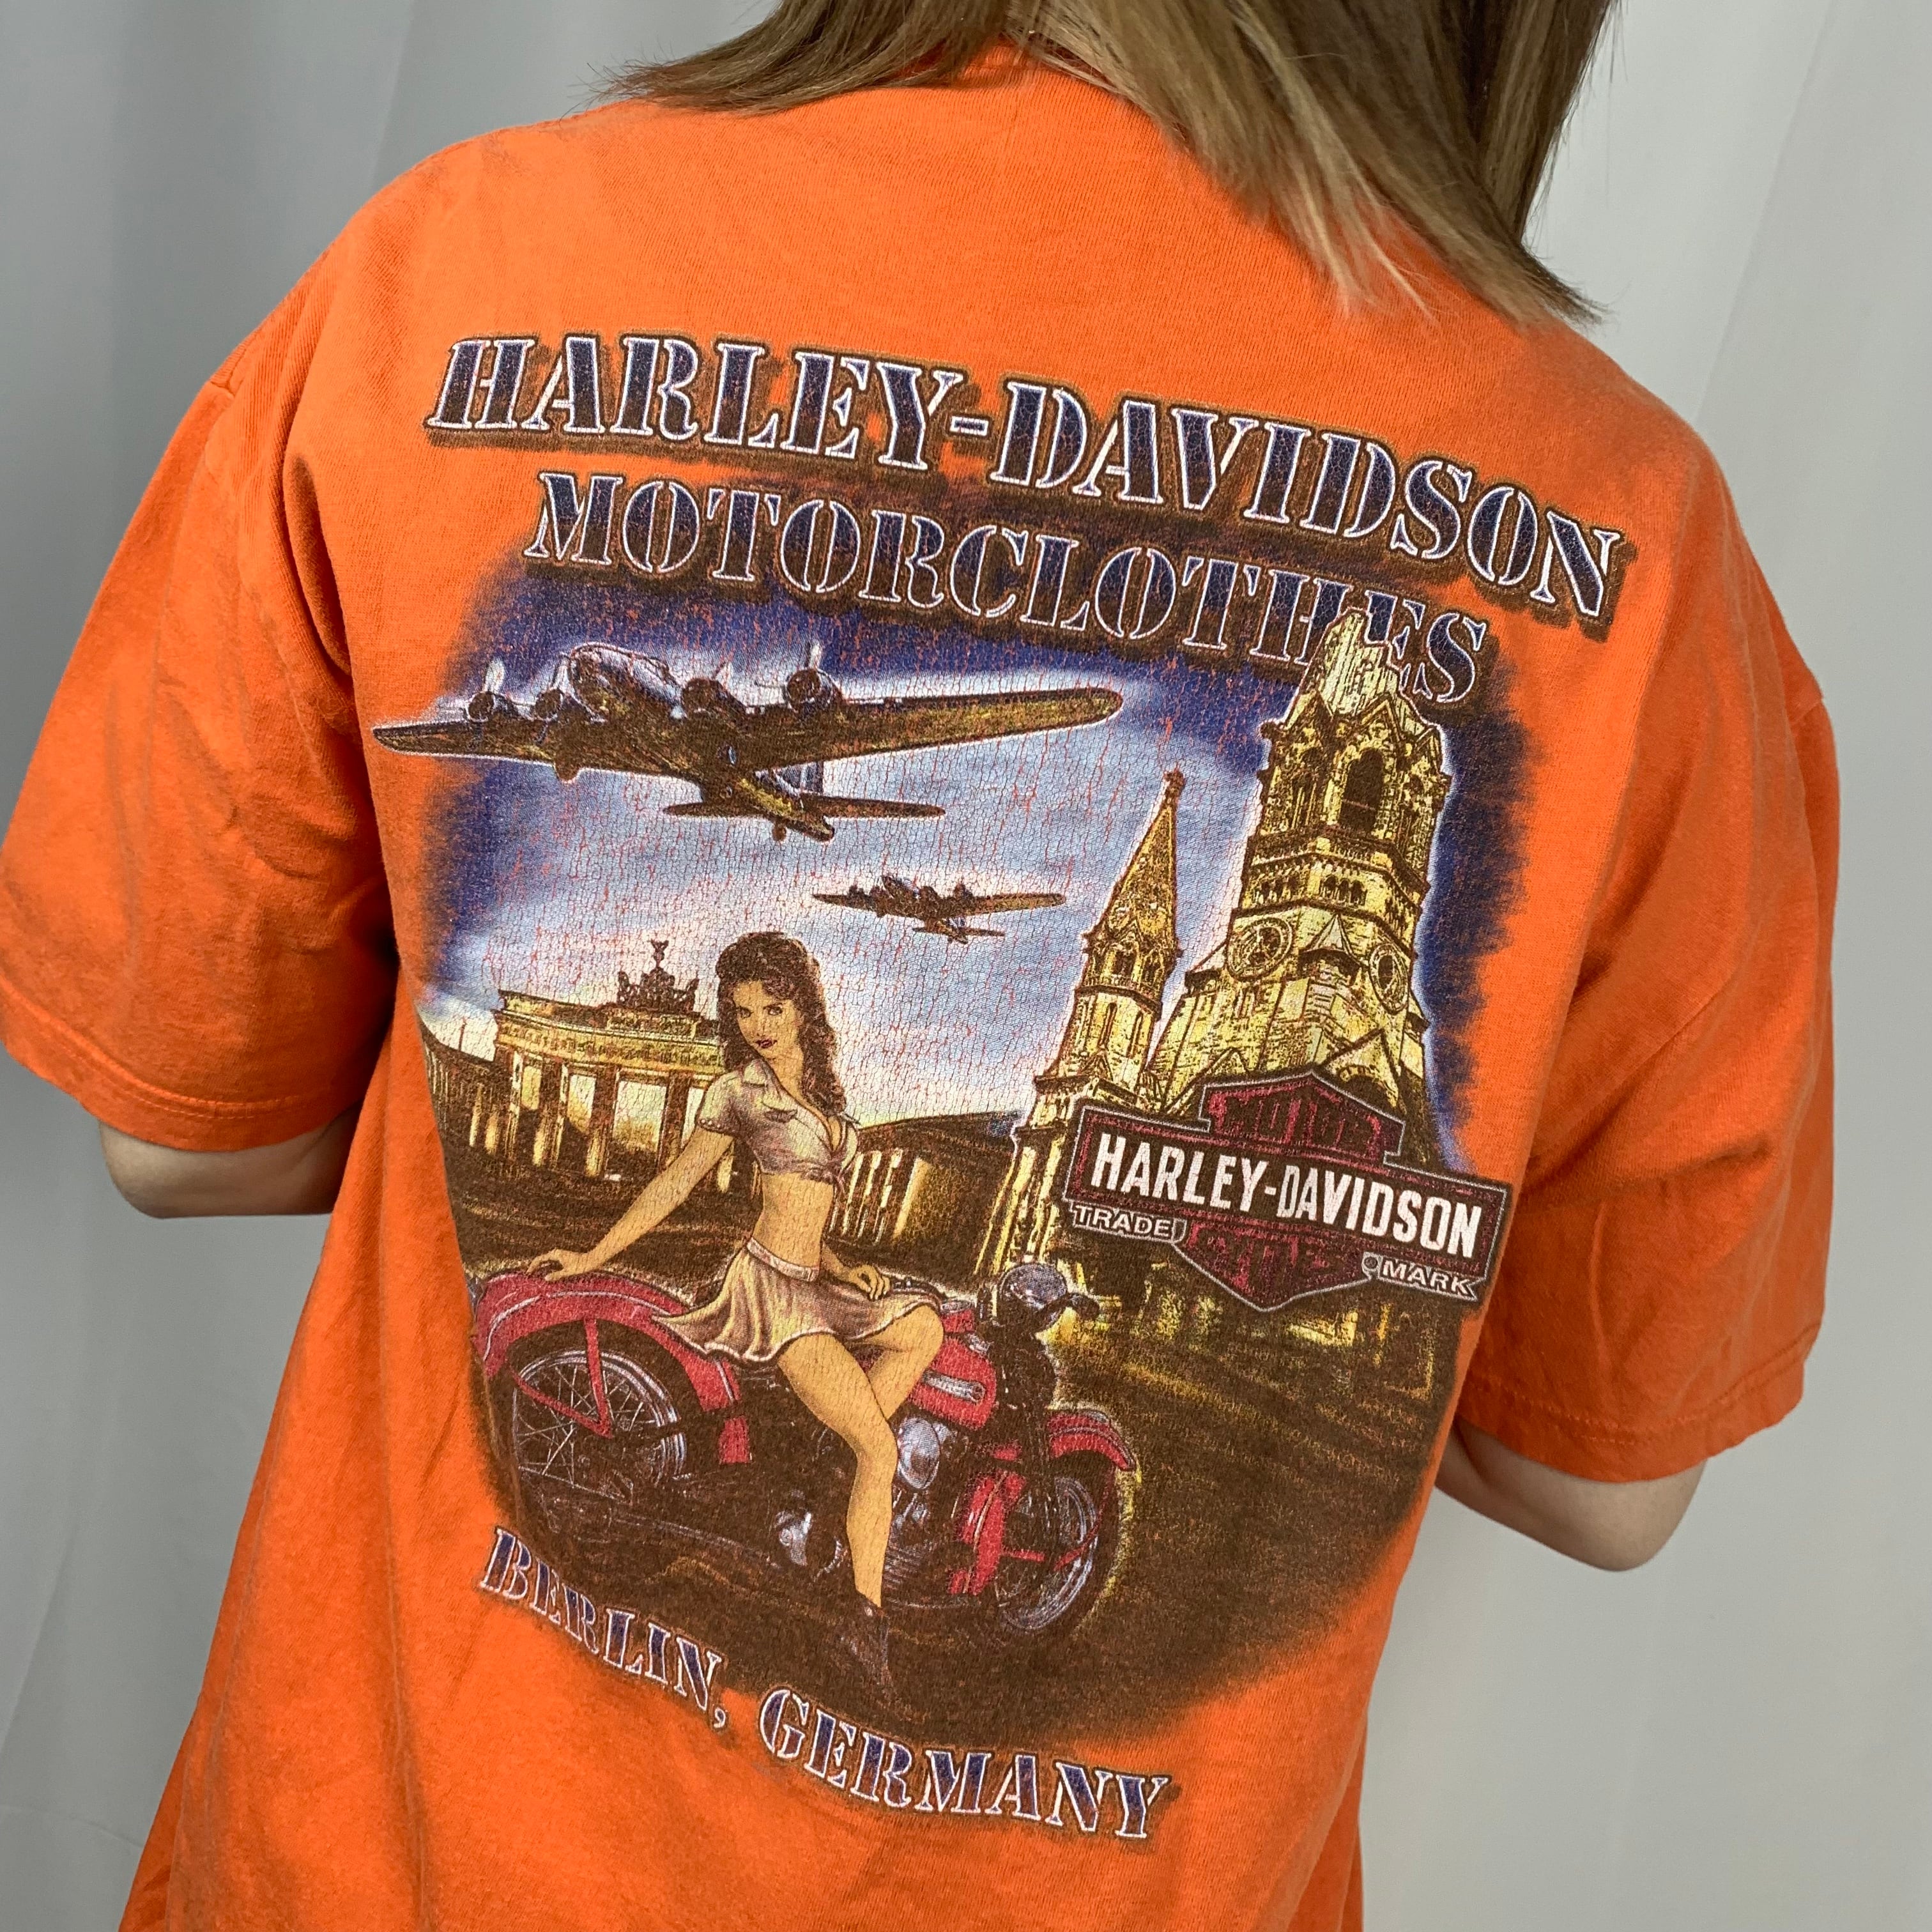 ハーレーダビットソン HARLEY ピンナップガール 女性 Tシャツ グレーXL